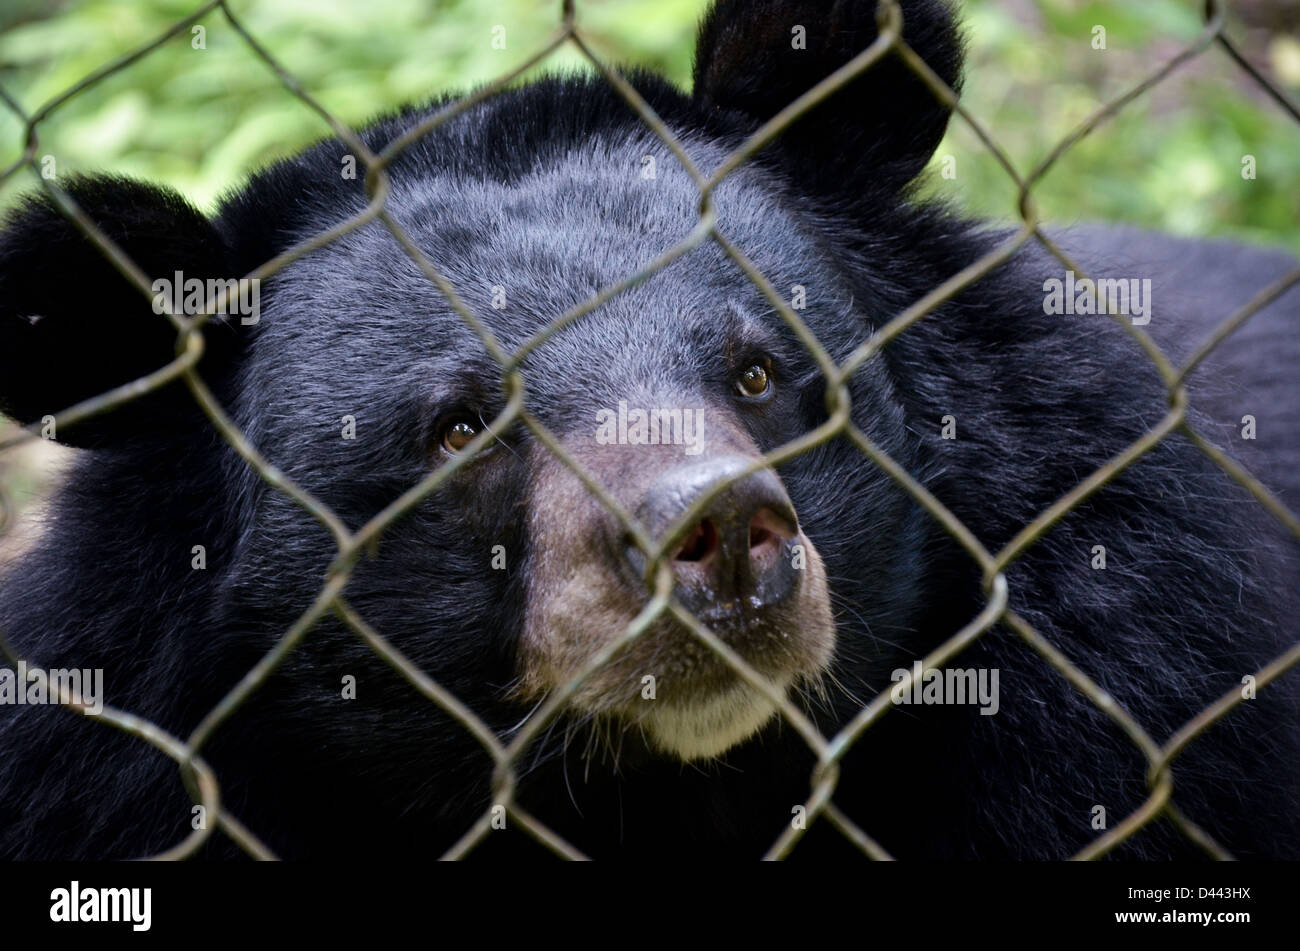 Bear saved from poaching at Kuang Si waterfall bear reserve, Laos Stock Photo